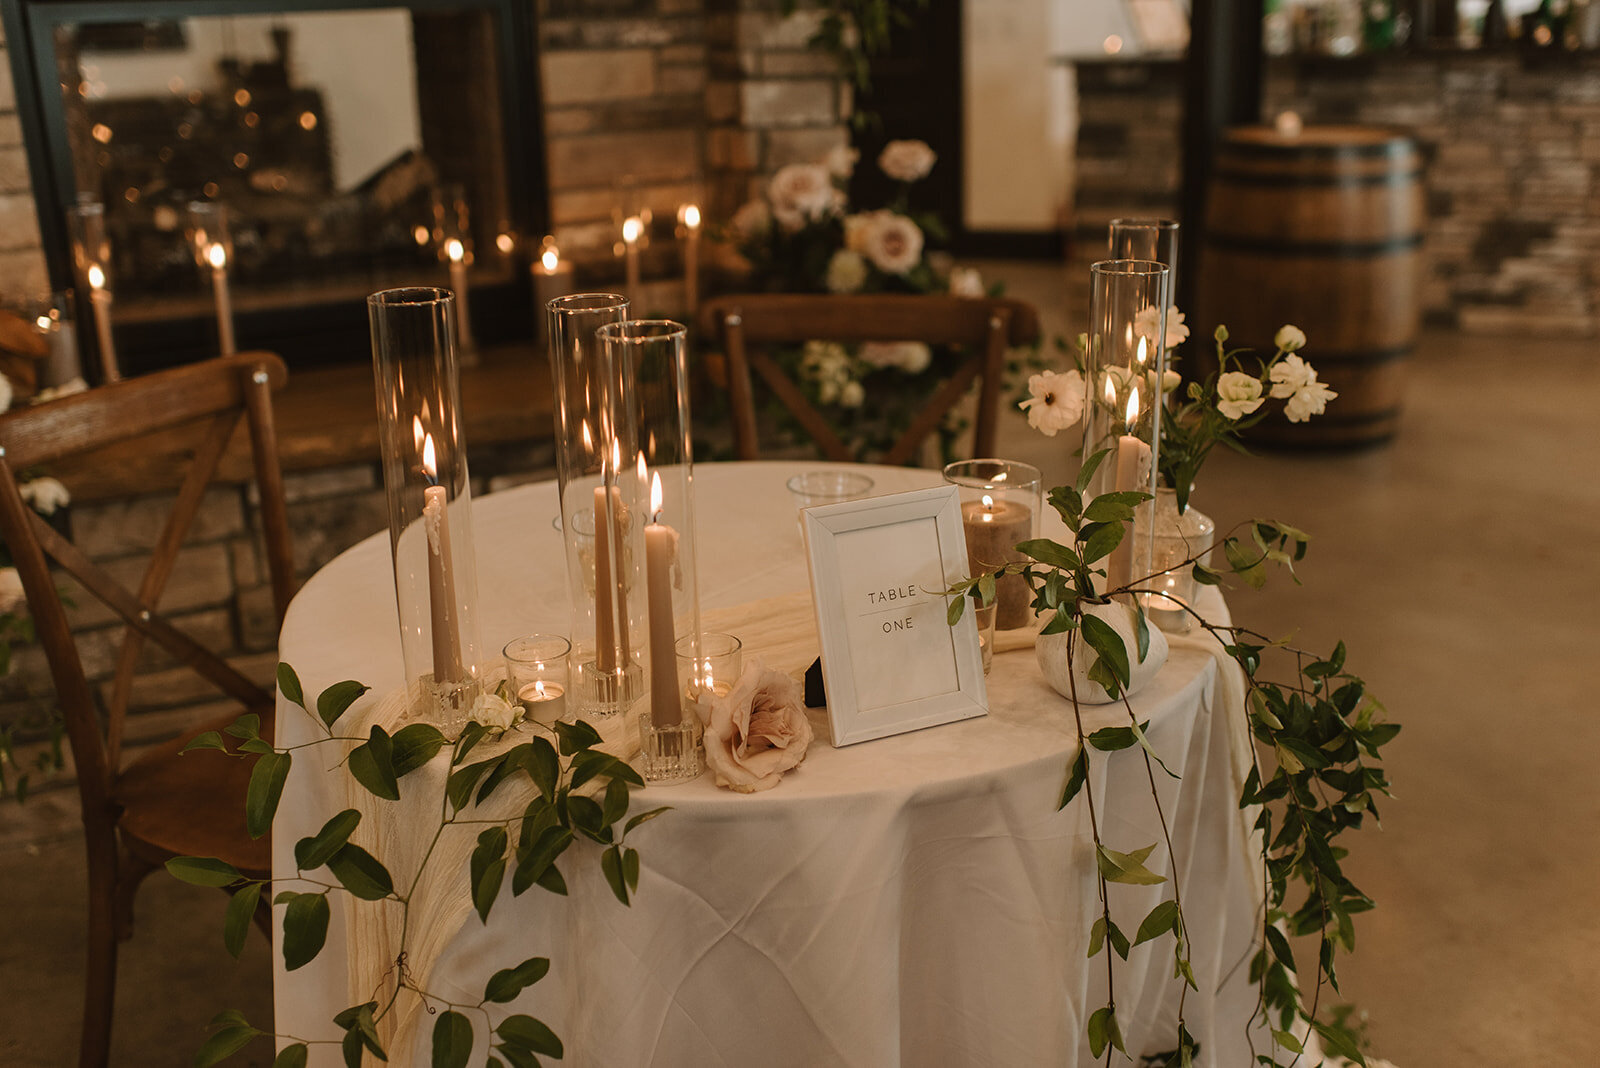 Elegant reception table set-up for wedding